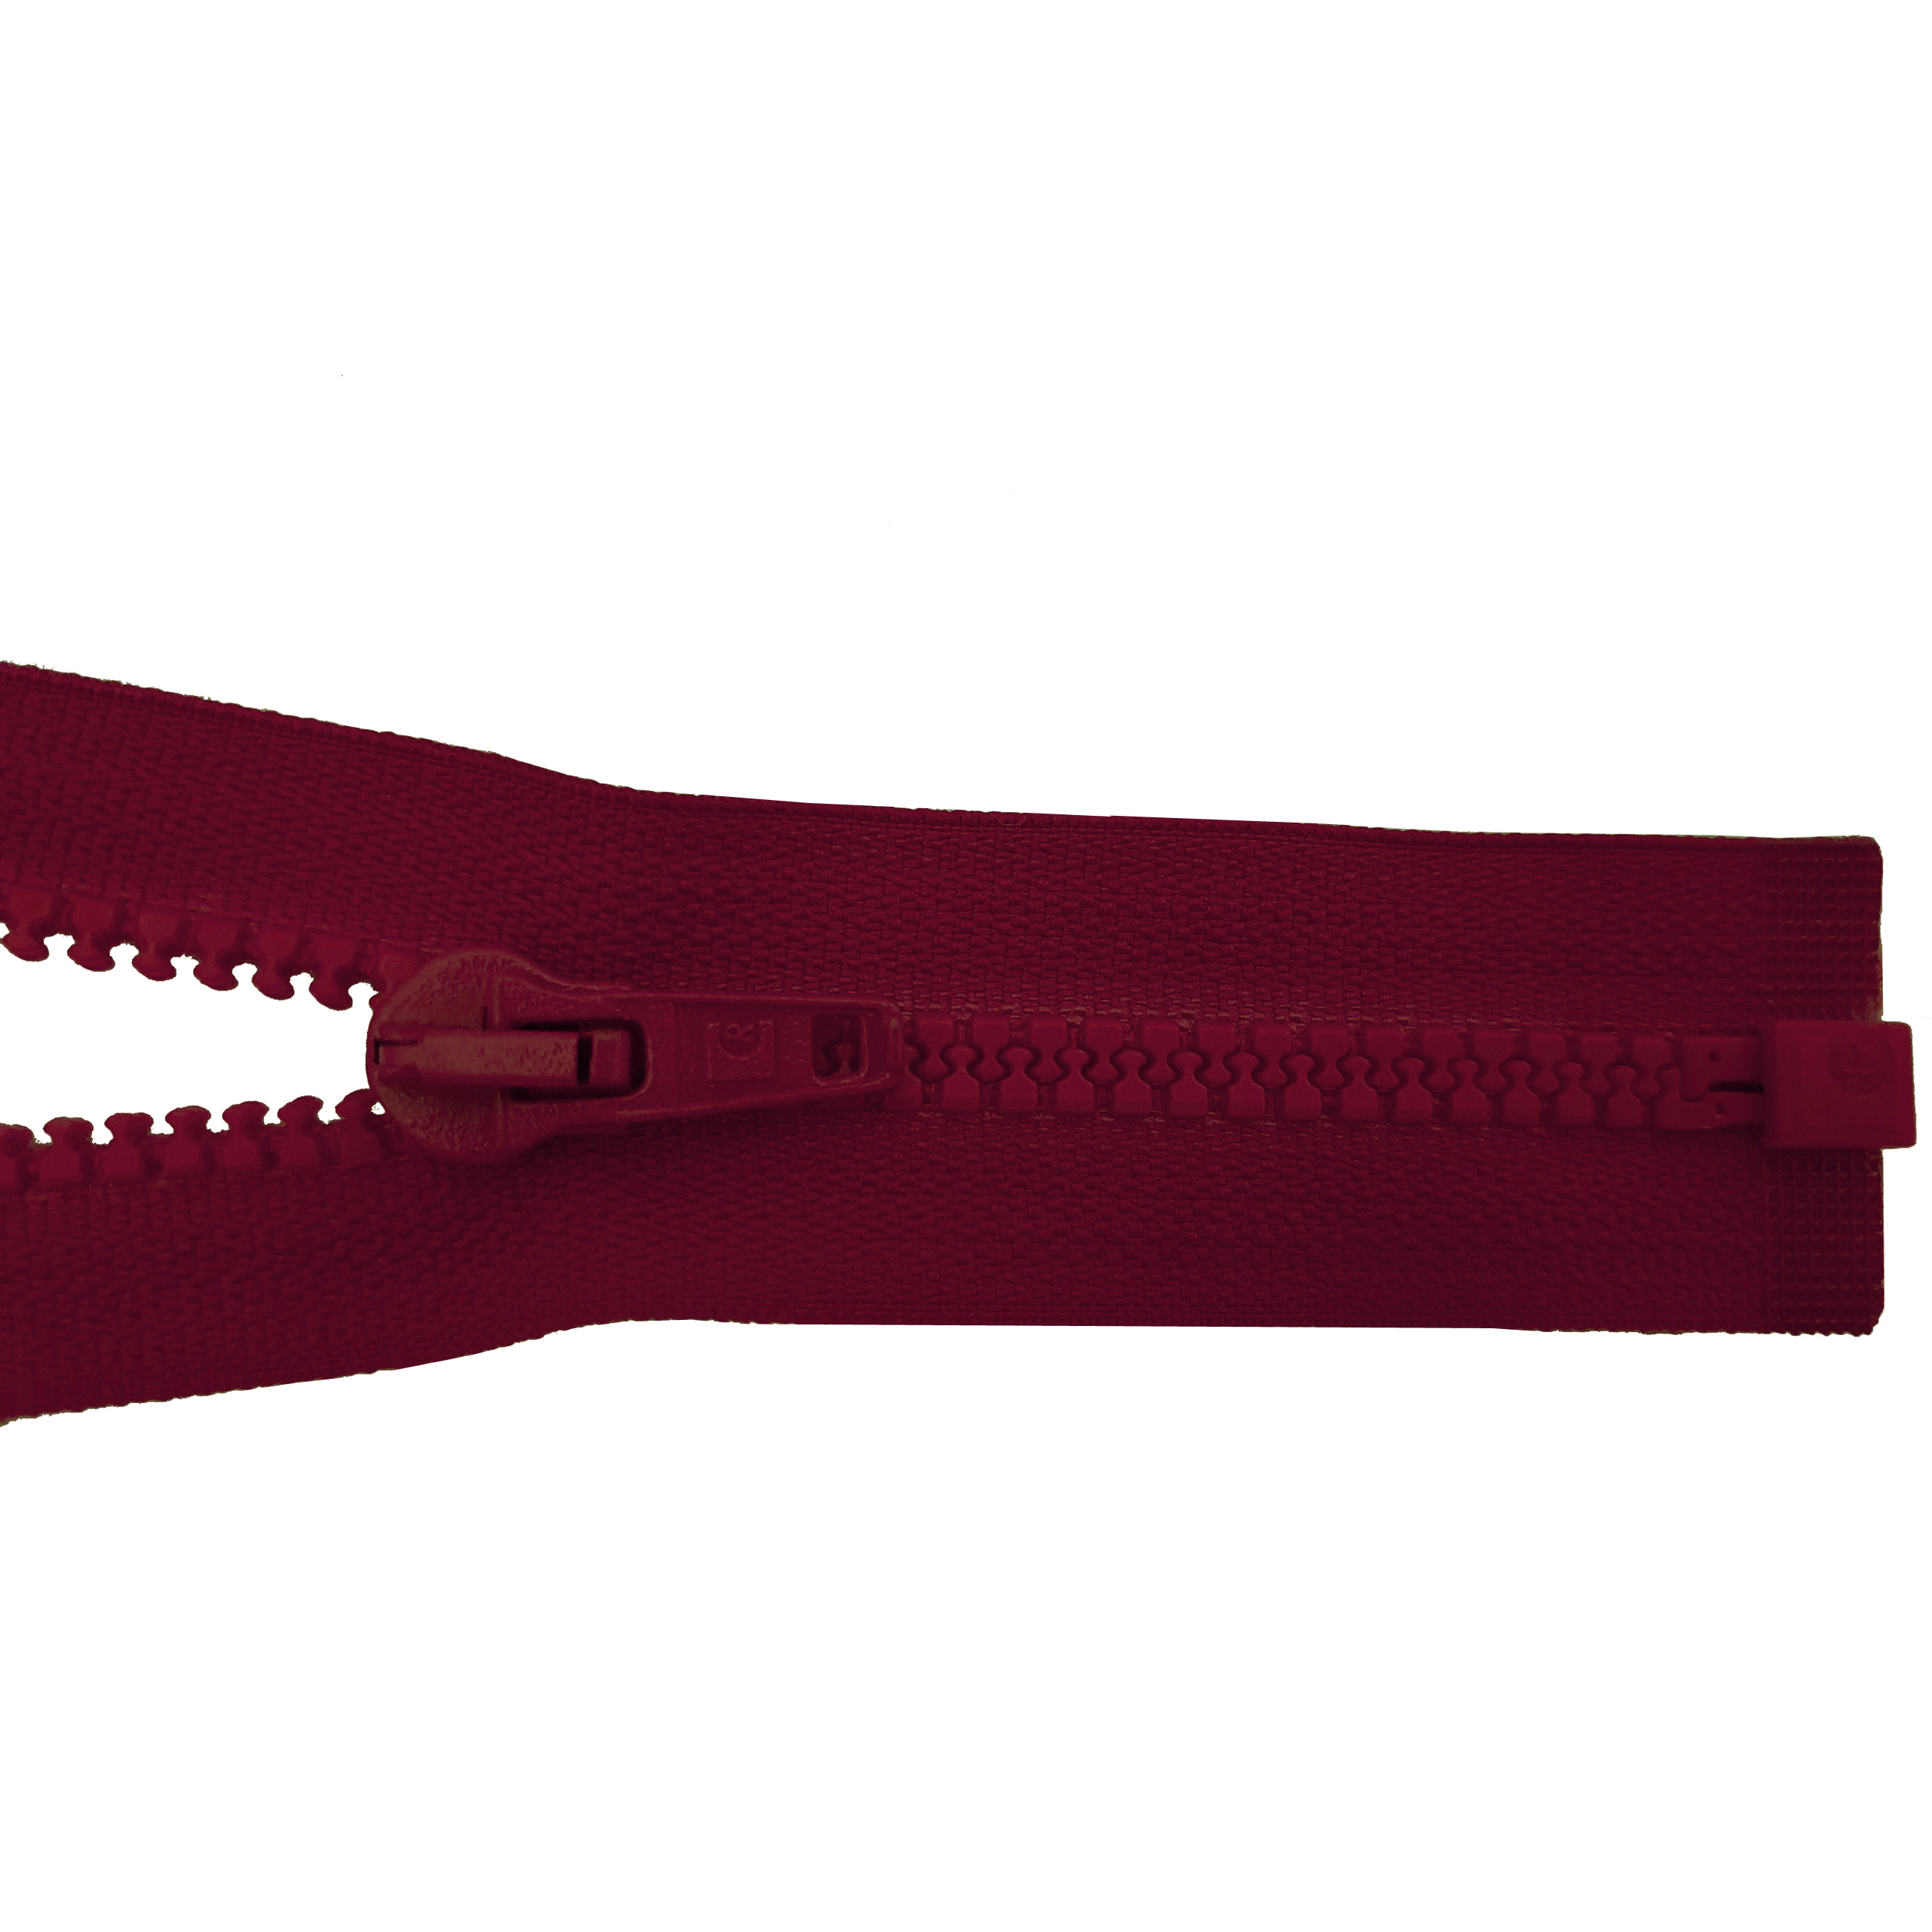 Reißverschluss 80cm, teilbar, Kstoff Zähne breit, weinrot, hochwertiger Marken-Reißverschluss von Rubi/Barcelona